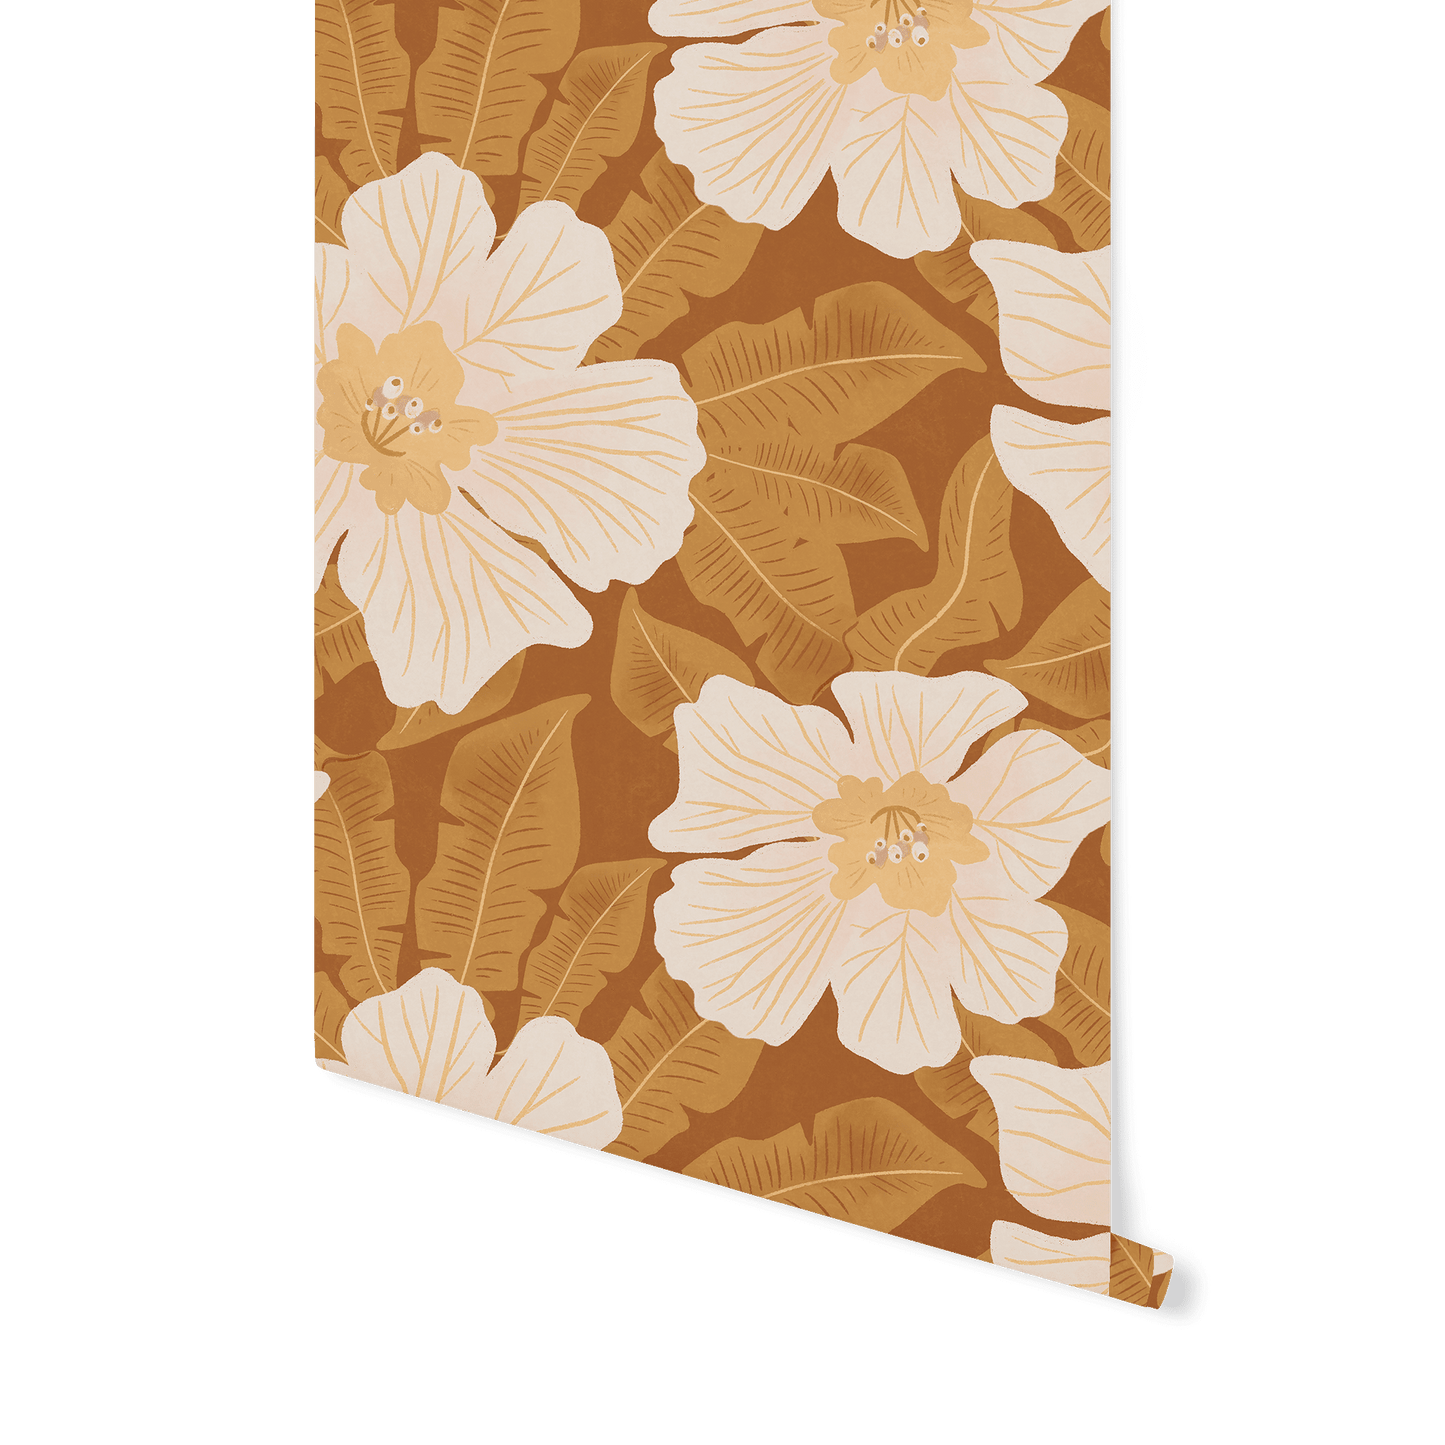 Hibiscus Wallpaper